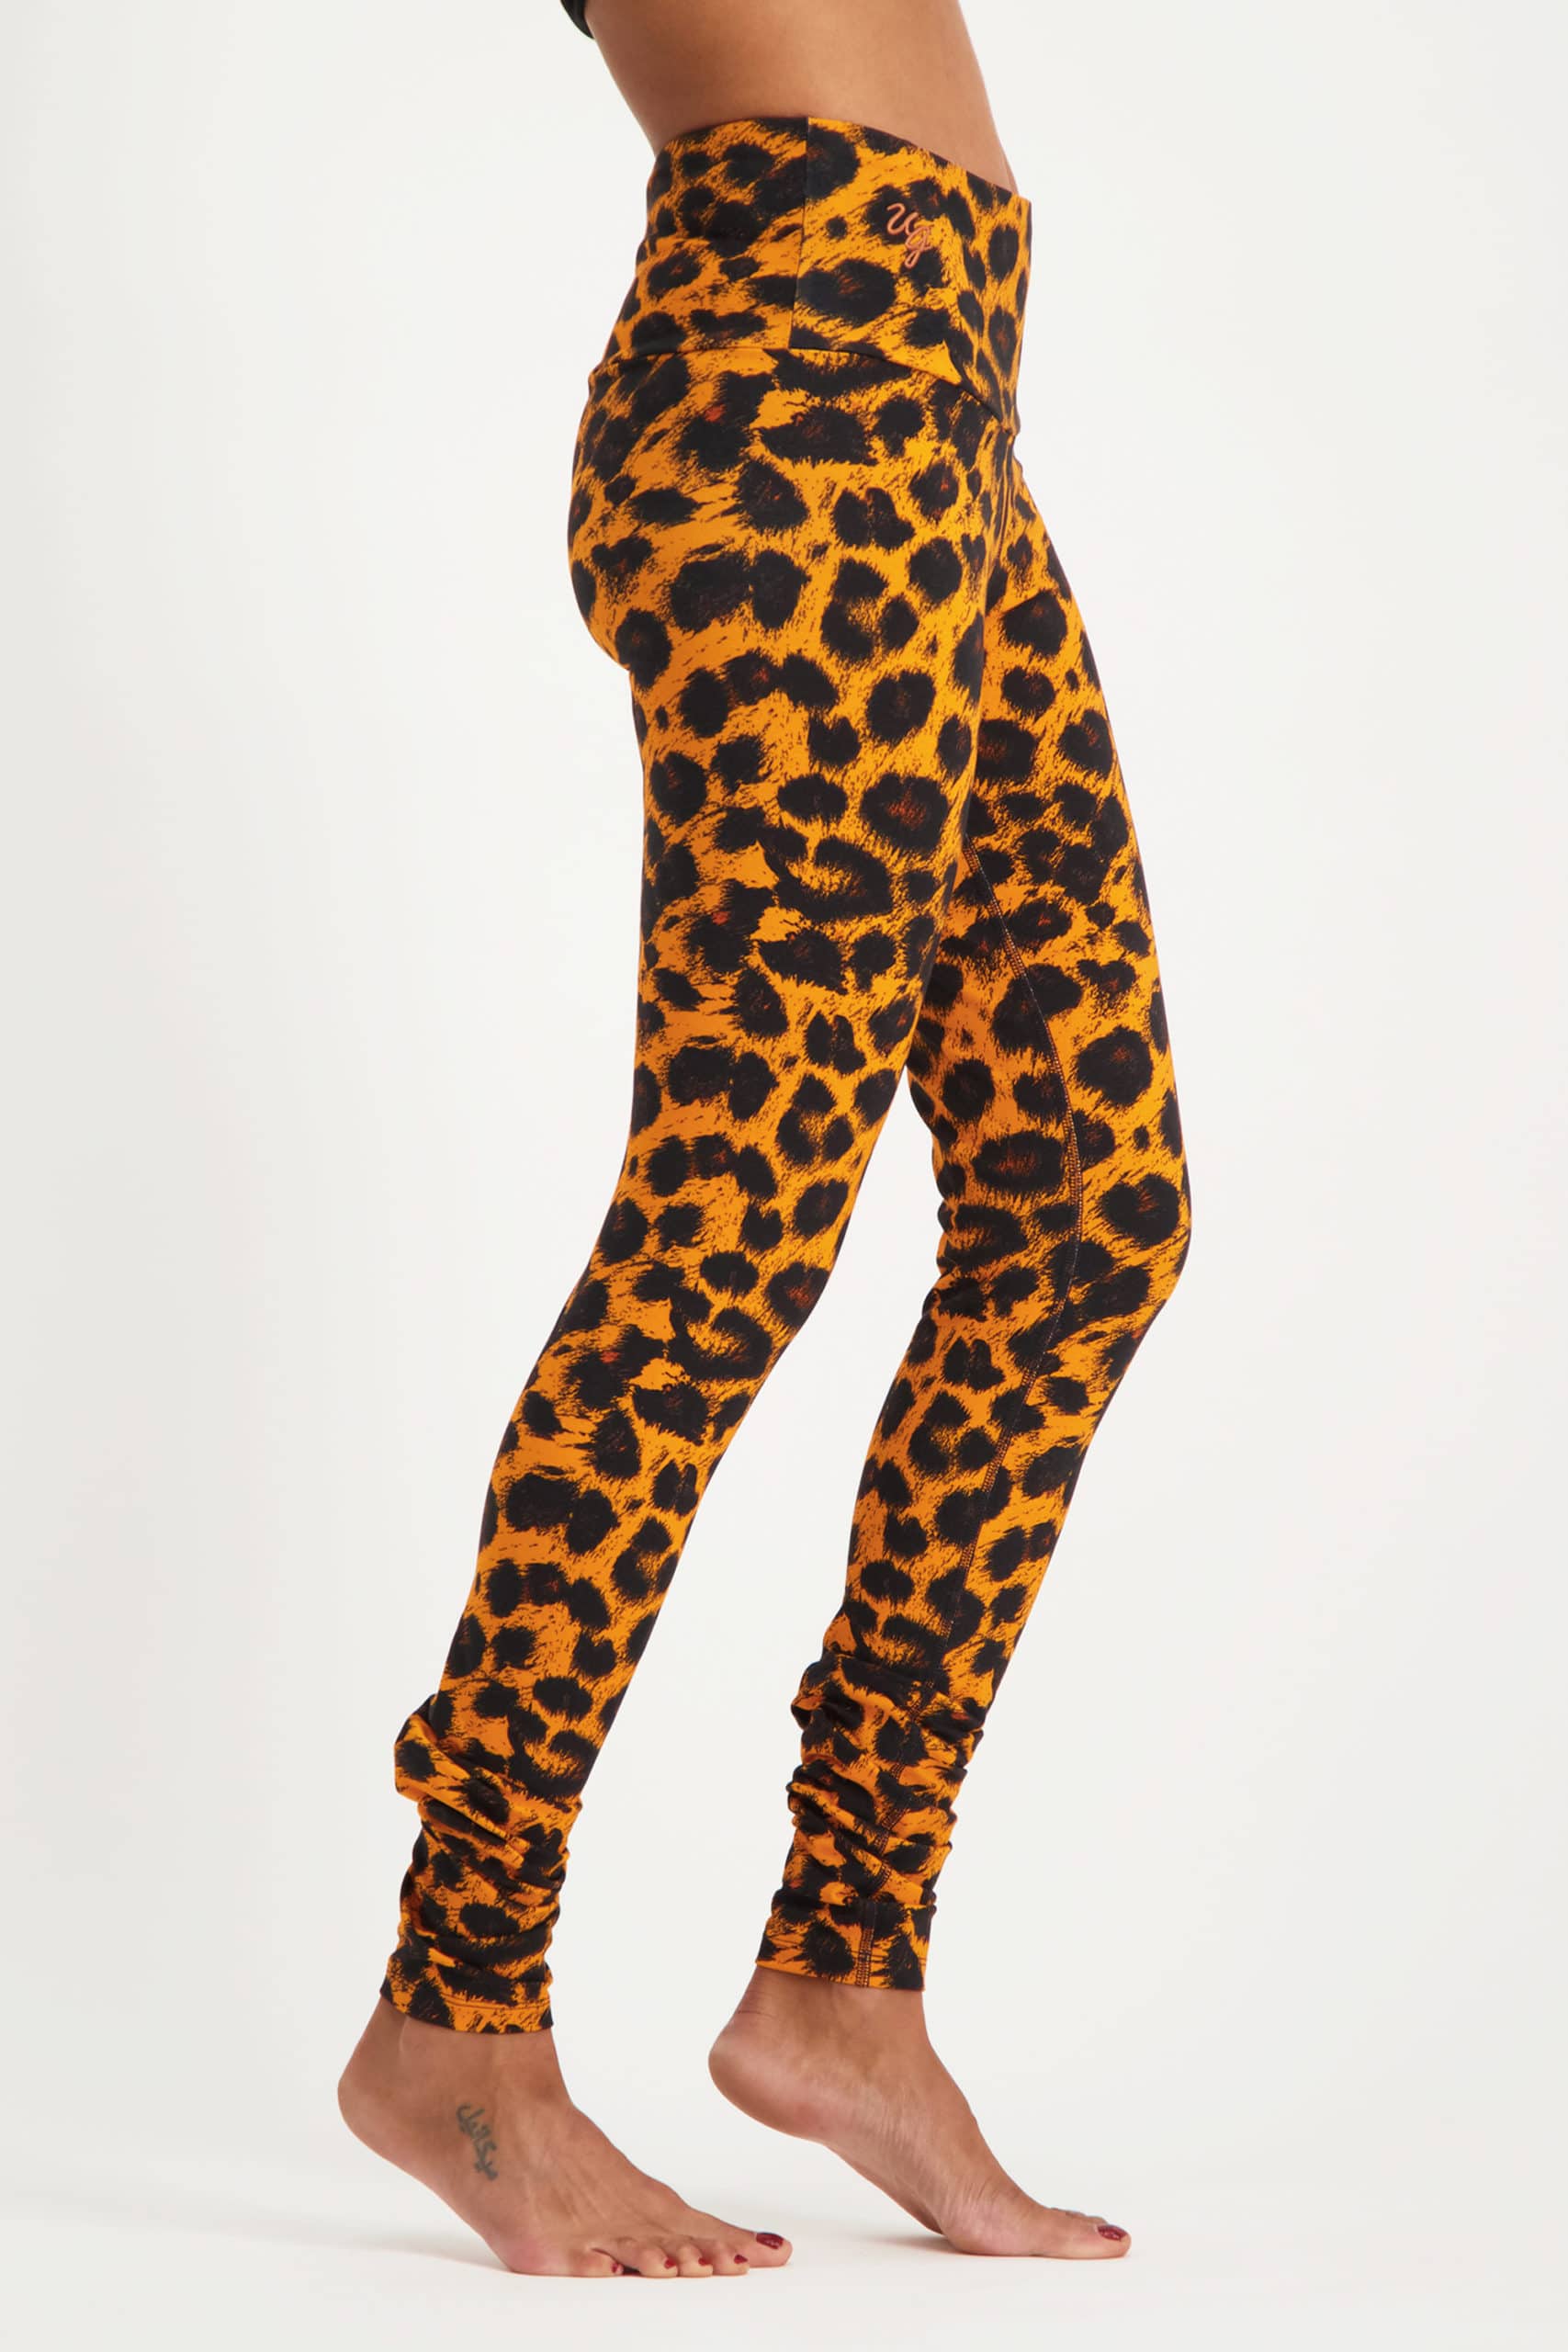 Satya leggings-leopard-10125528-model-side